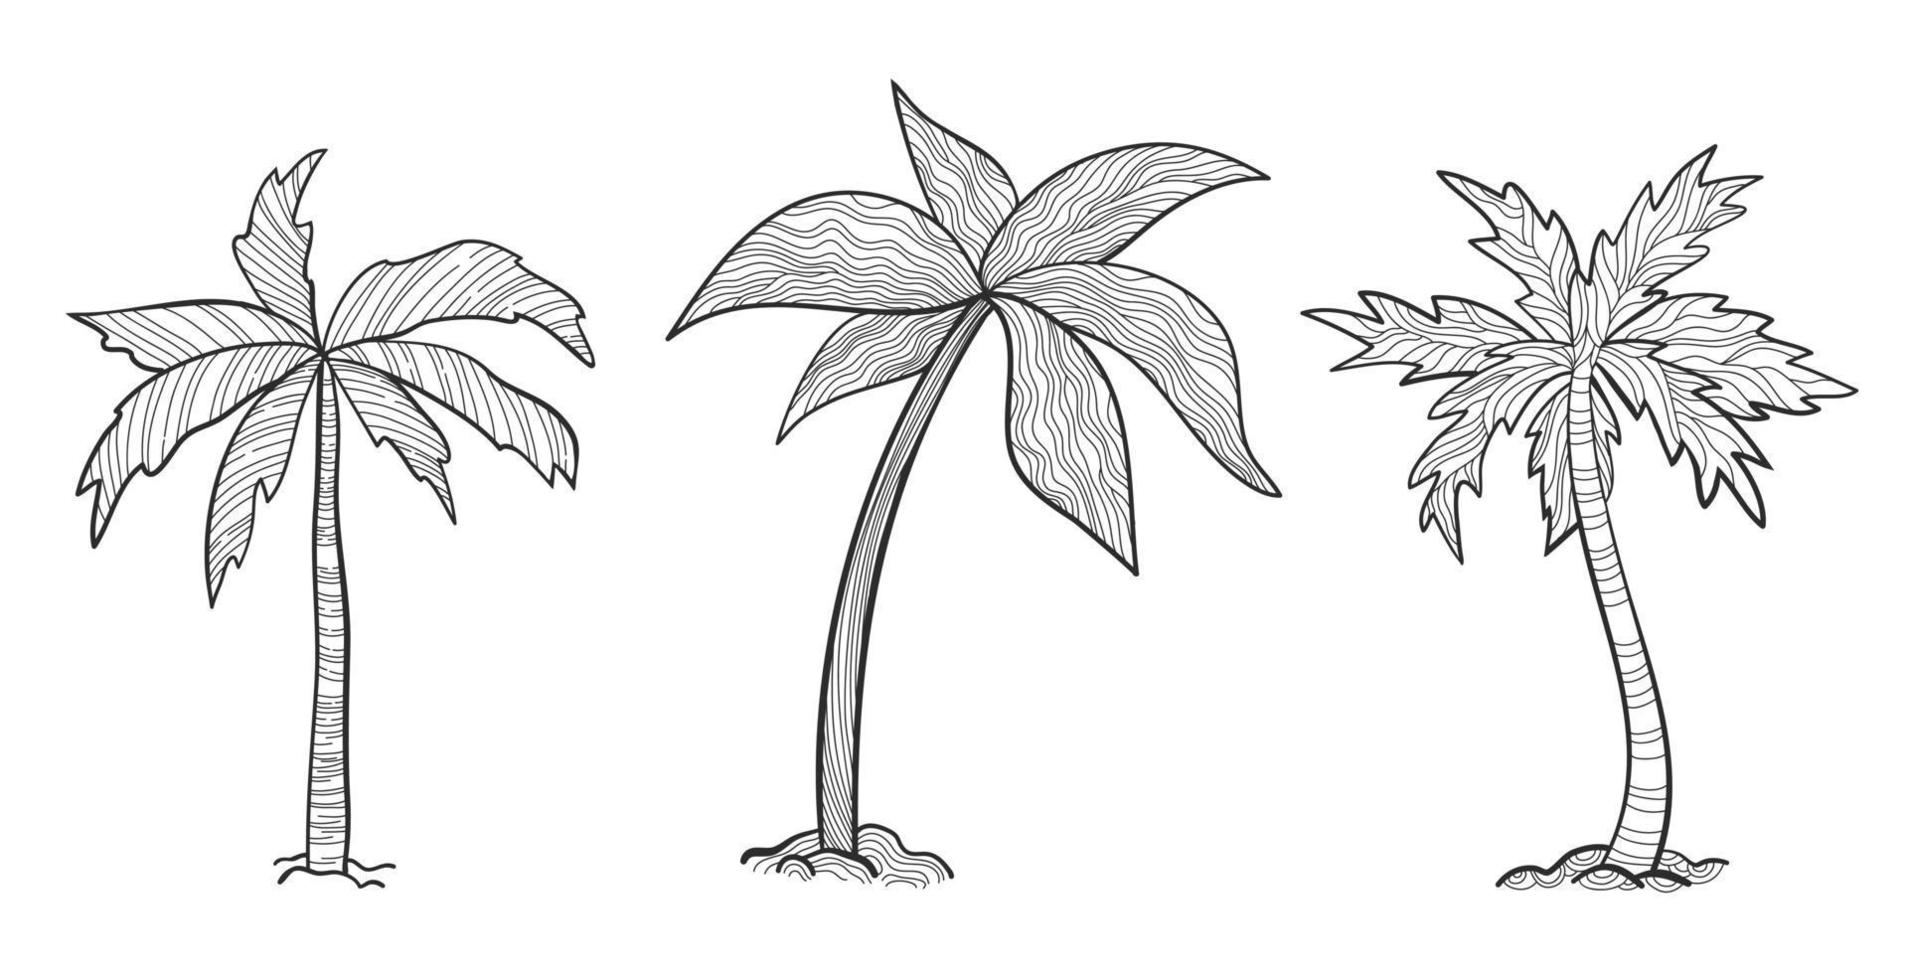 impostare palme tropicali con foglie, piante mature e giovani, sagome nere isolate su sfondo bianco. stile di schizzo per il tuo design. vettore